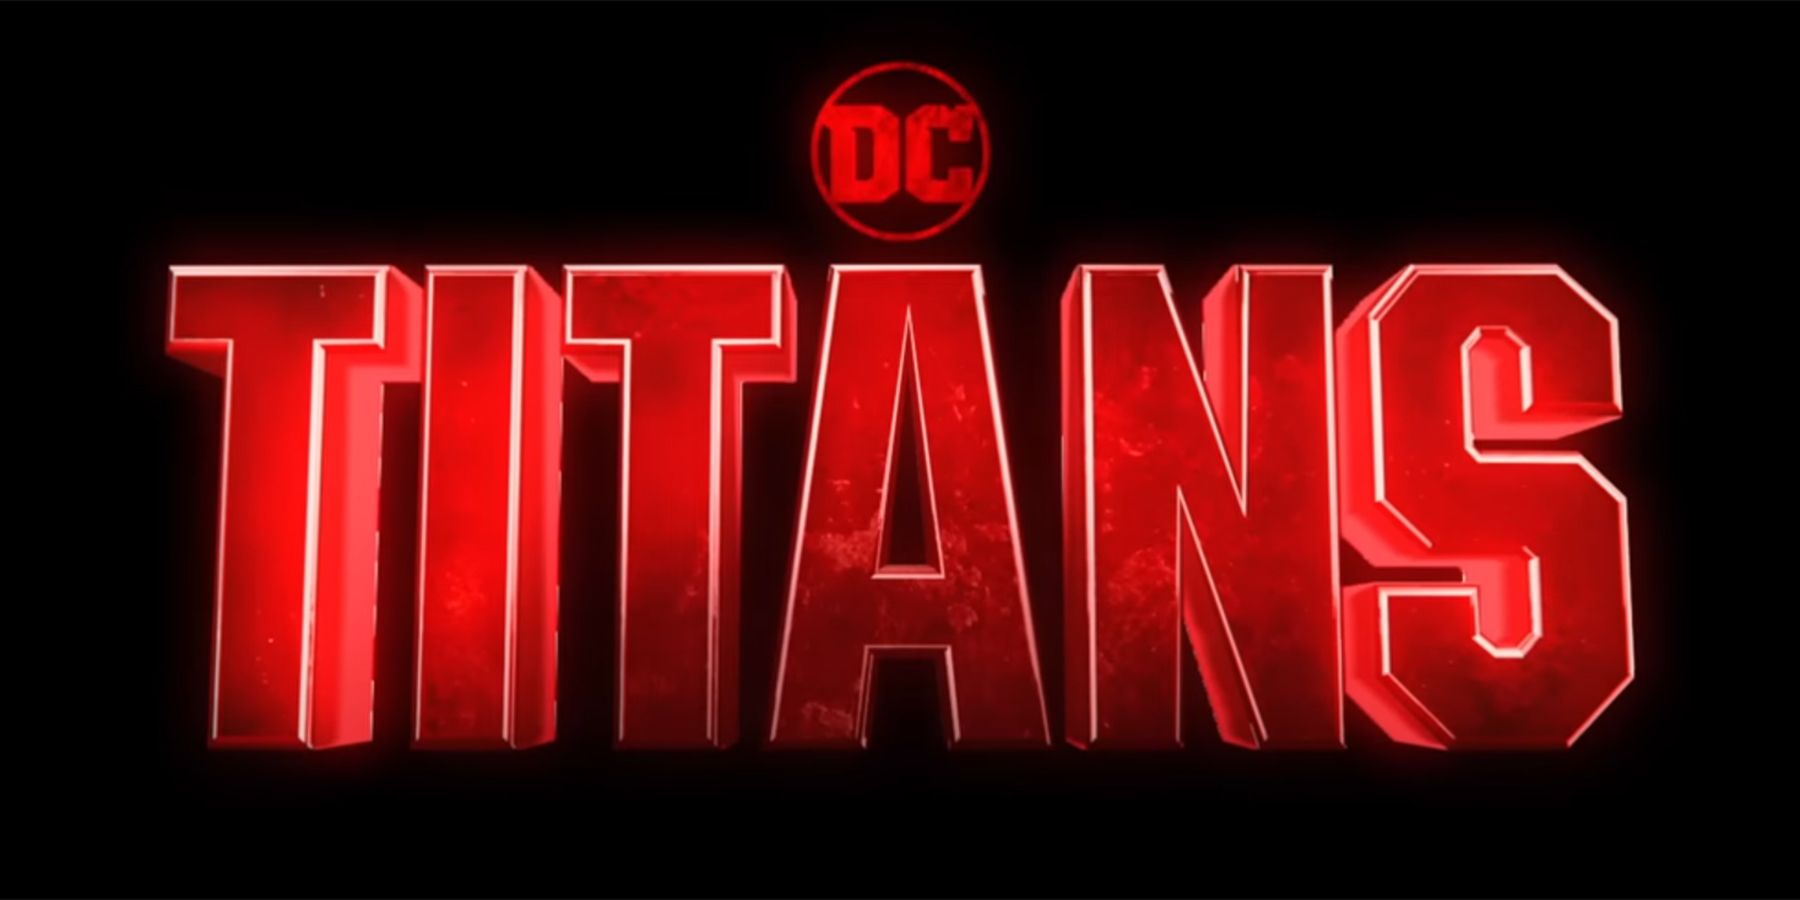 Titans season 4